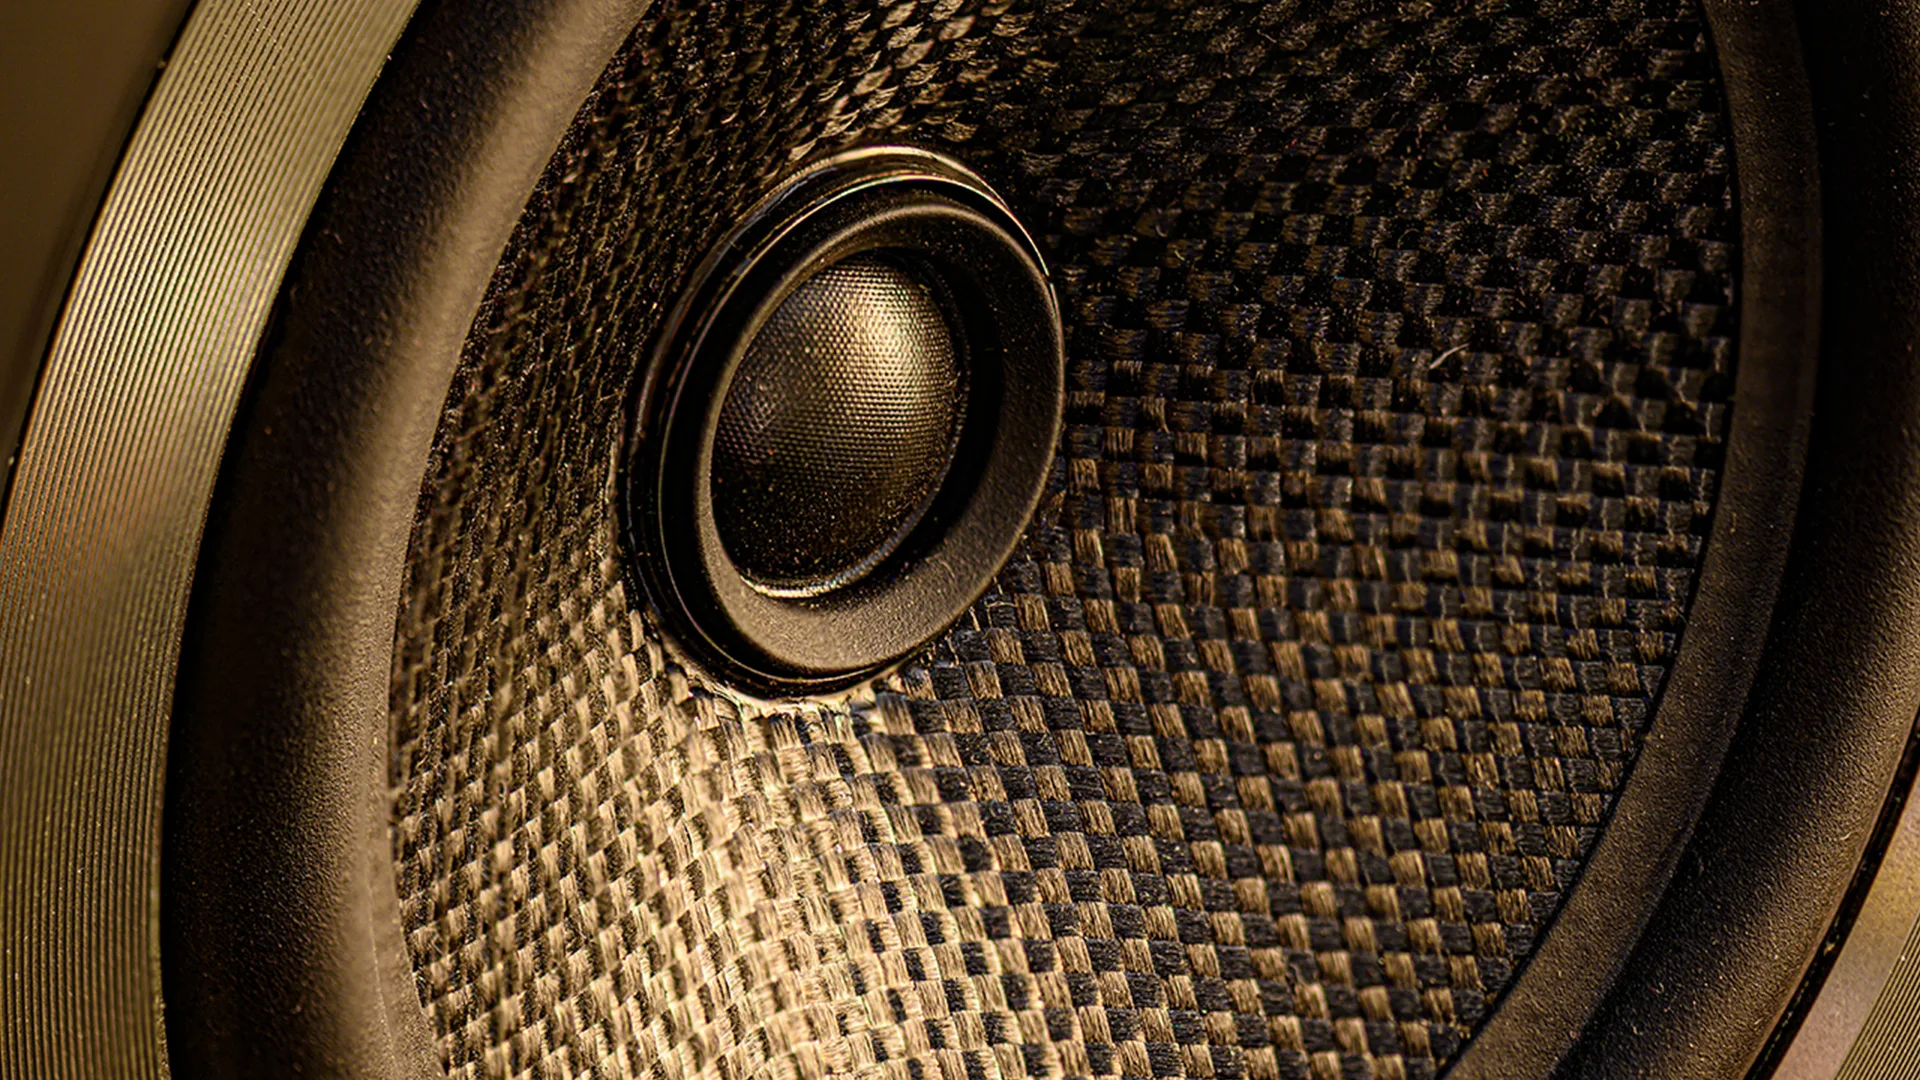 A close up of a speaker